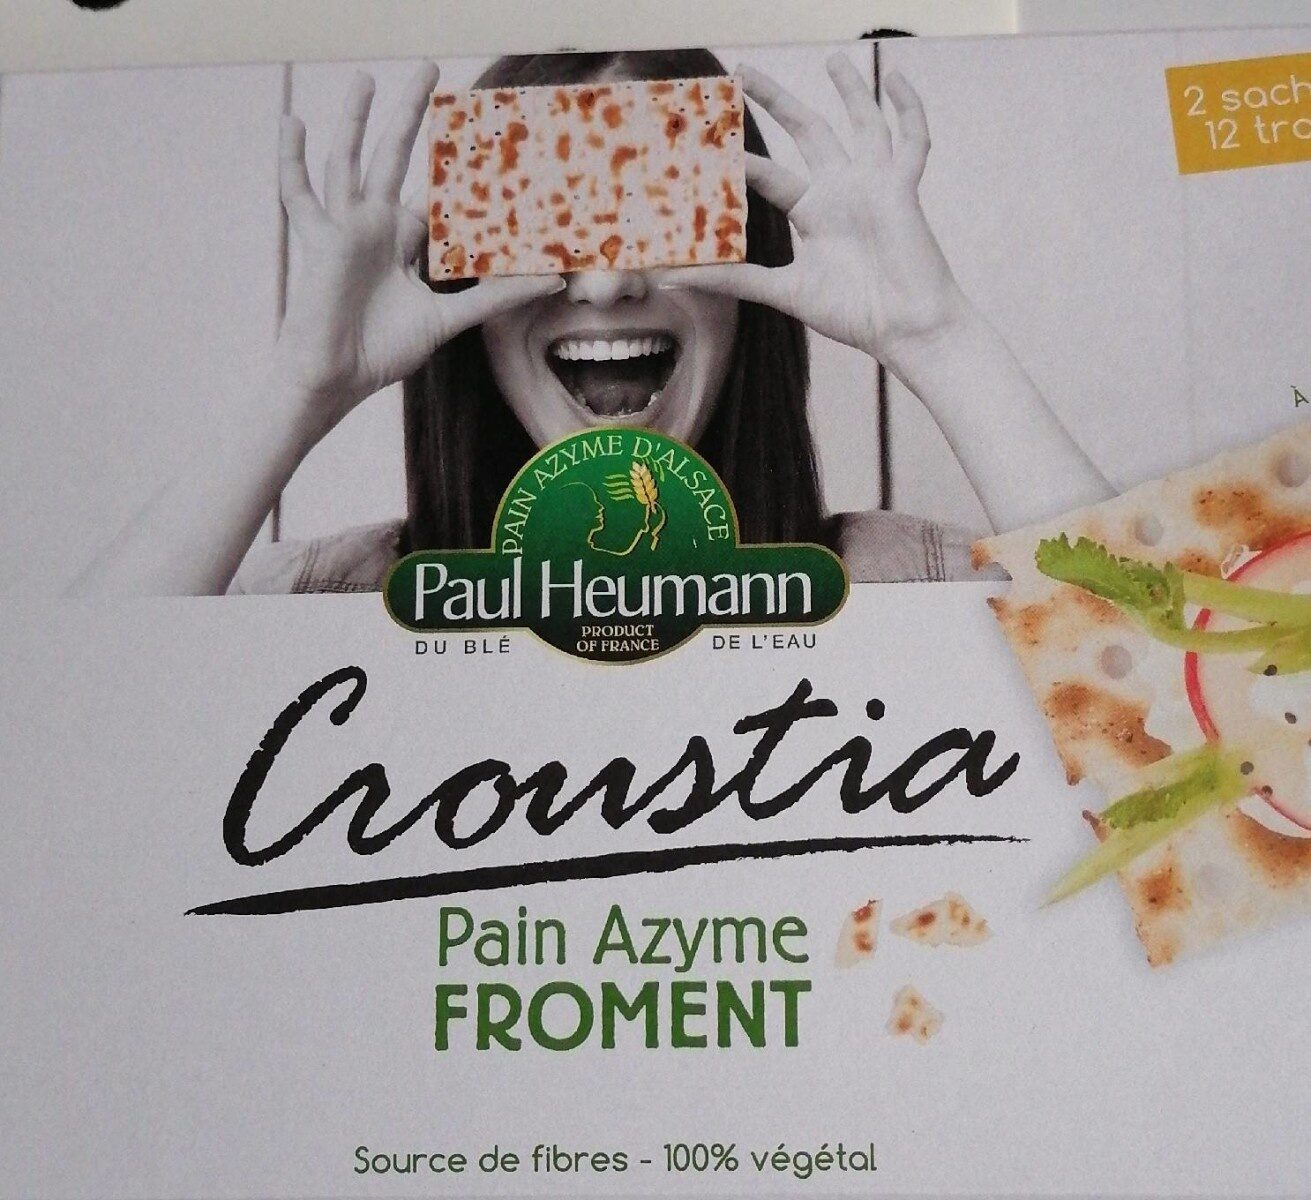 Pain azyme froment - Produit